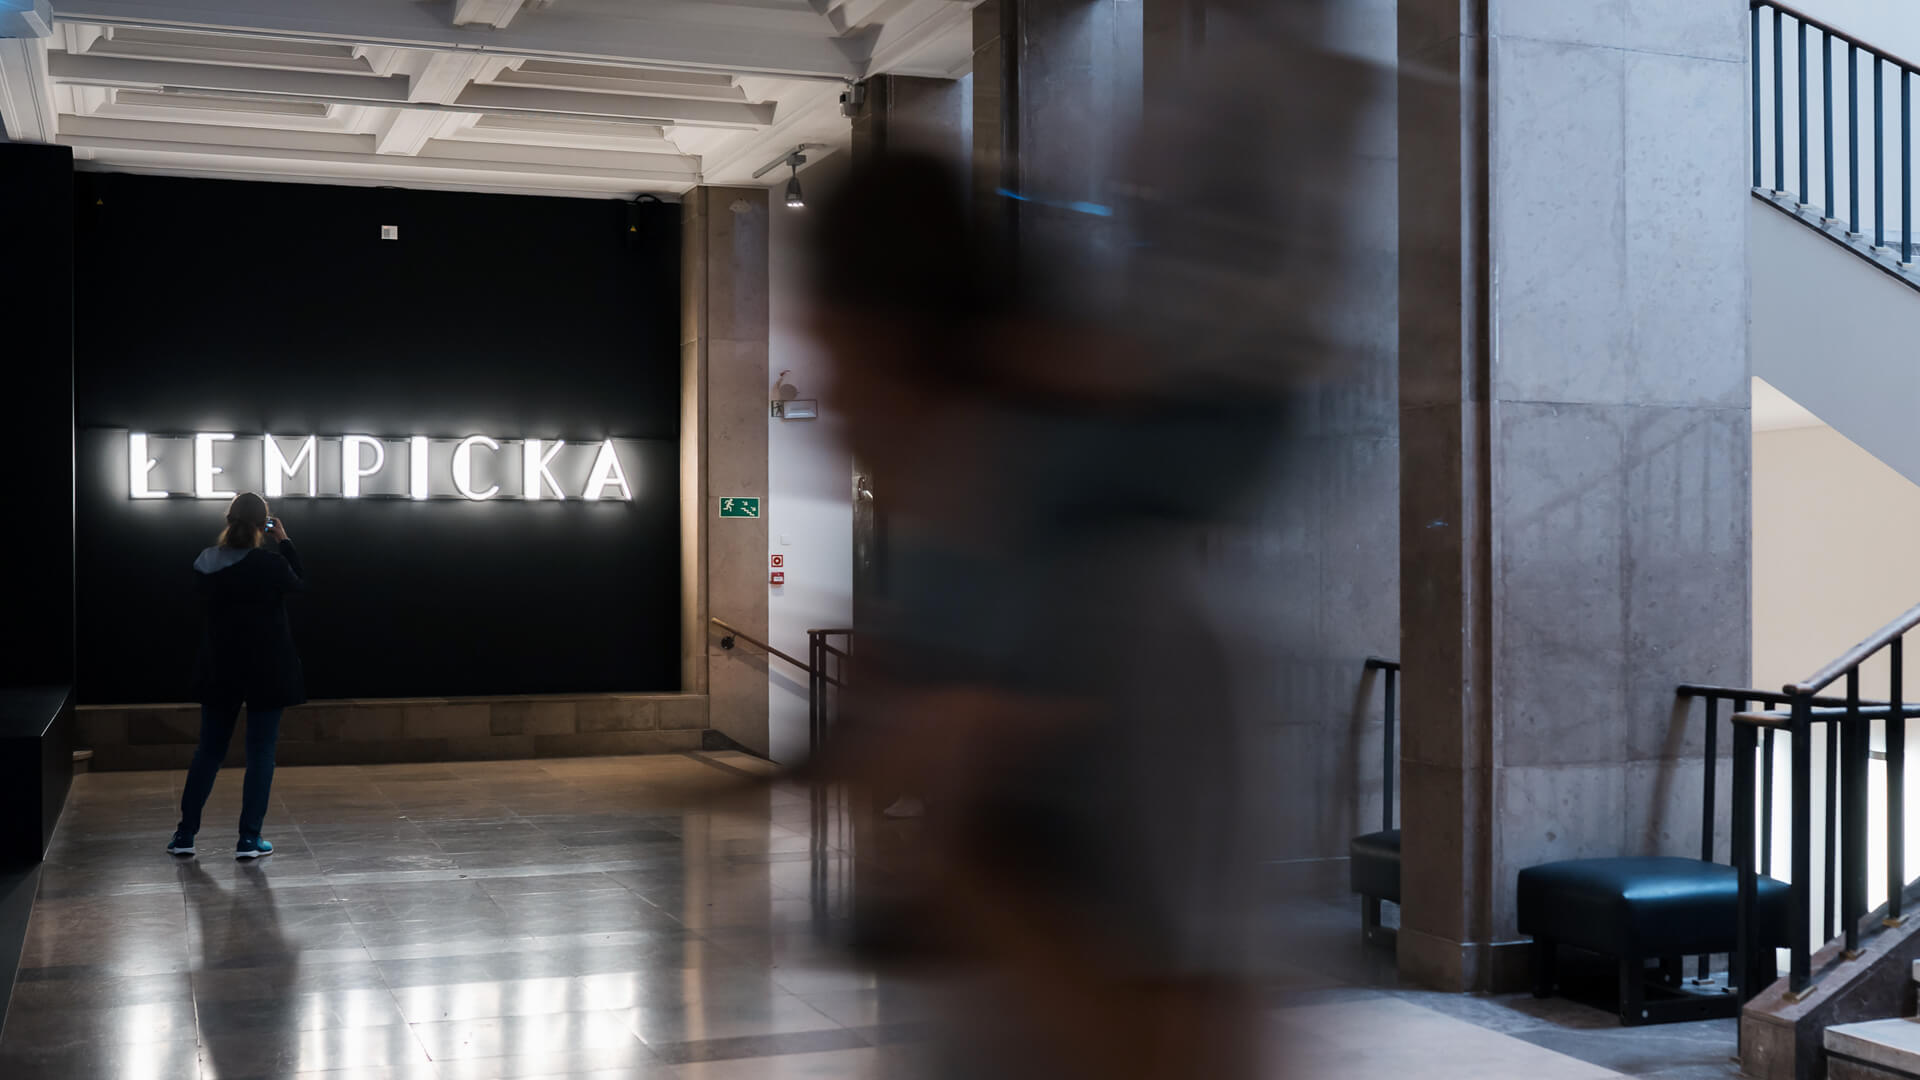 Néon Tamara Lempicka - Exposition avec enseigne au néon dans un musée de Cracovie